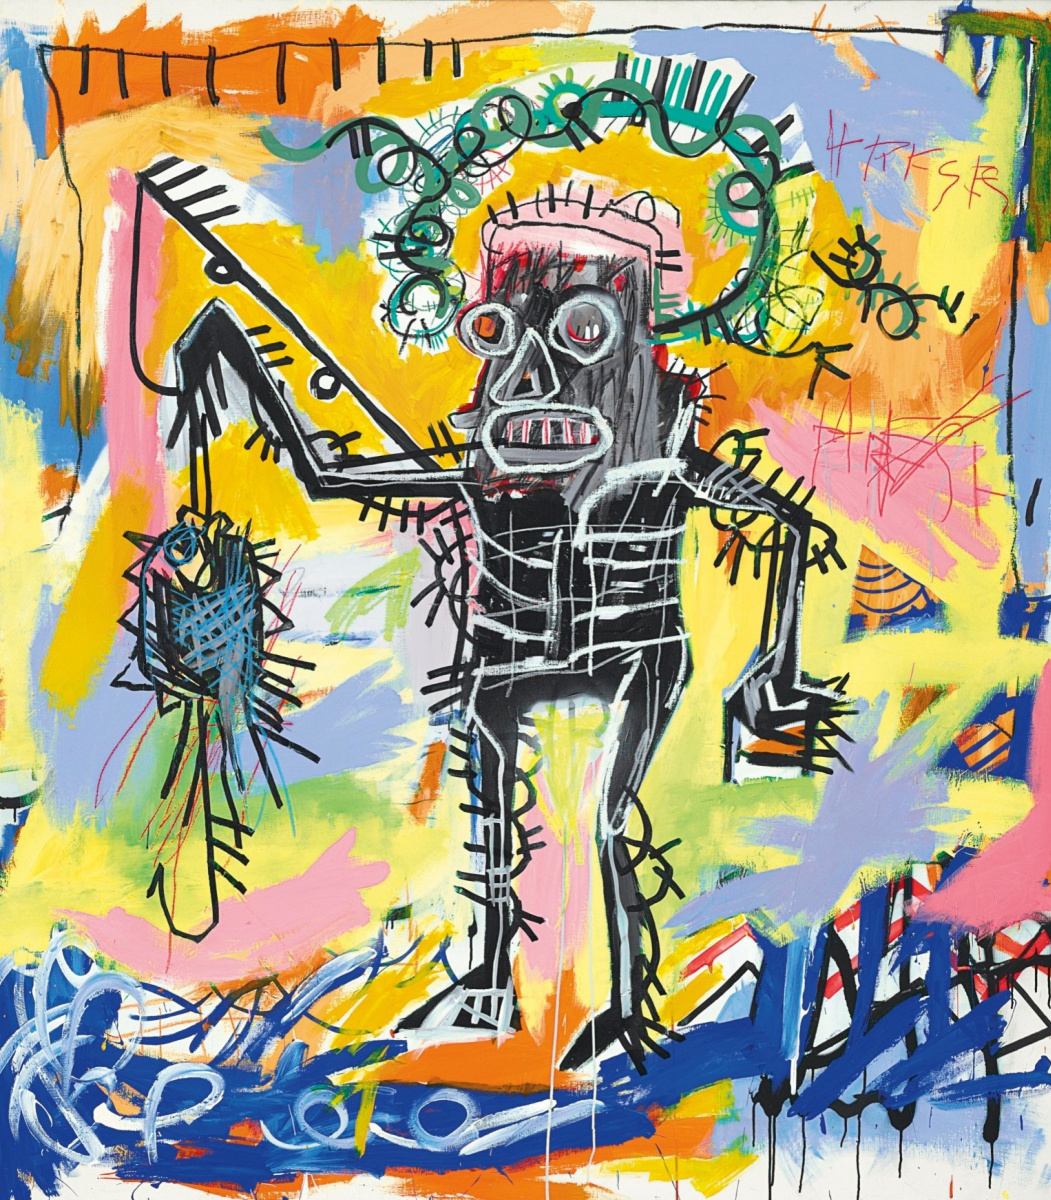 # 永遠停留 27 歲，卻成為藝術史上最貴：塗鴉傳奇 Jean-Michel Basquiat 談名氣的影響 2